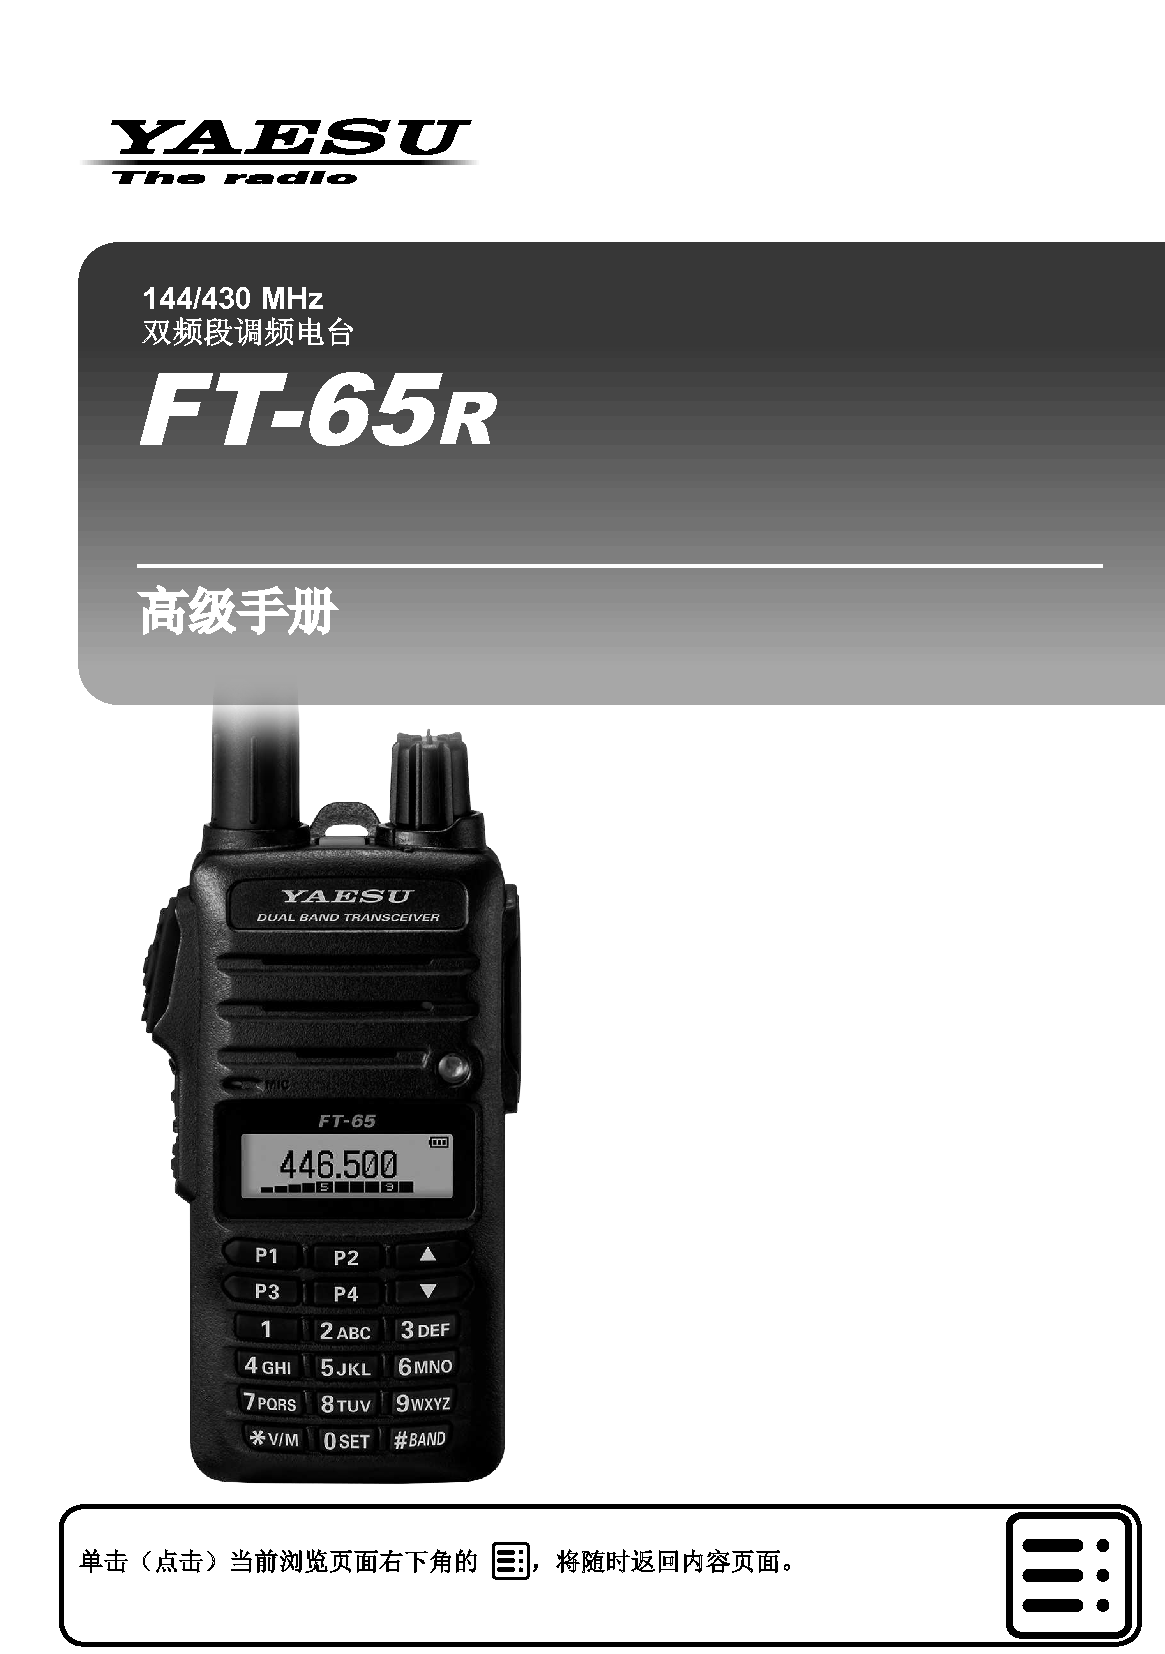 八重洲 YAESU FT-65R 高级操作手册 封面